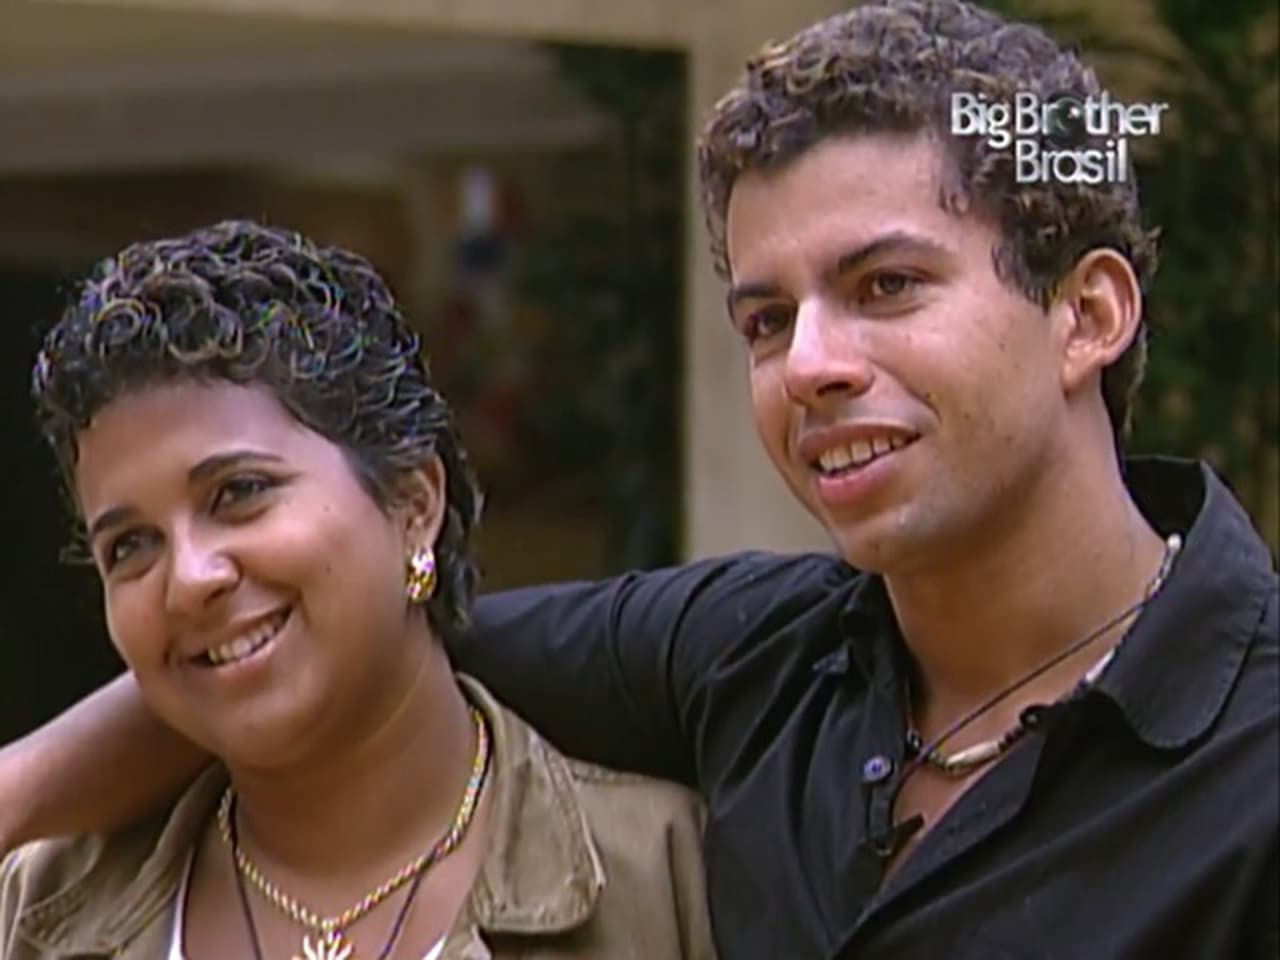 Big Brother Brasil - Season 4 Episode 85 : Episode 85